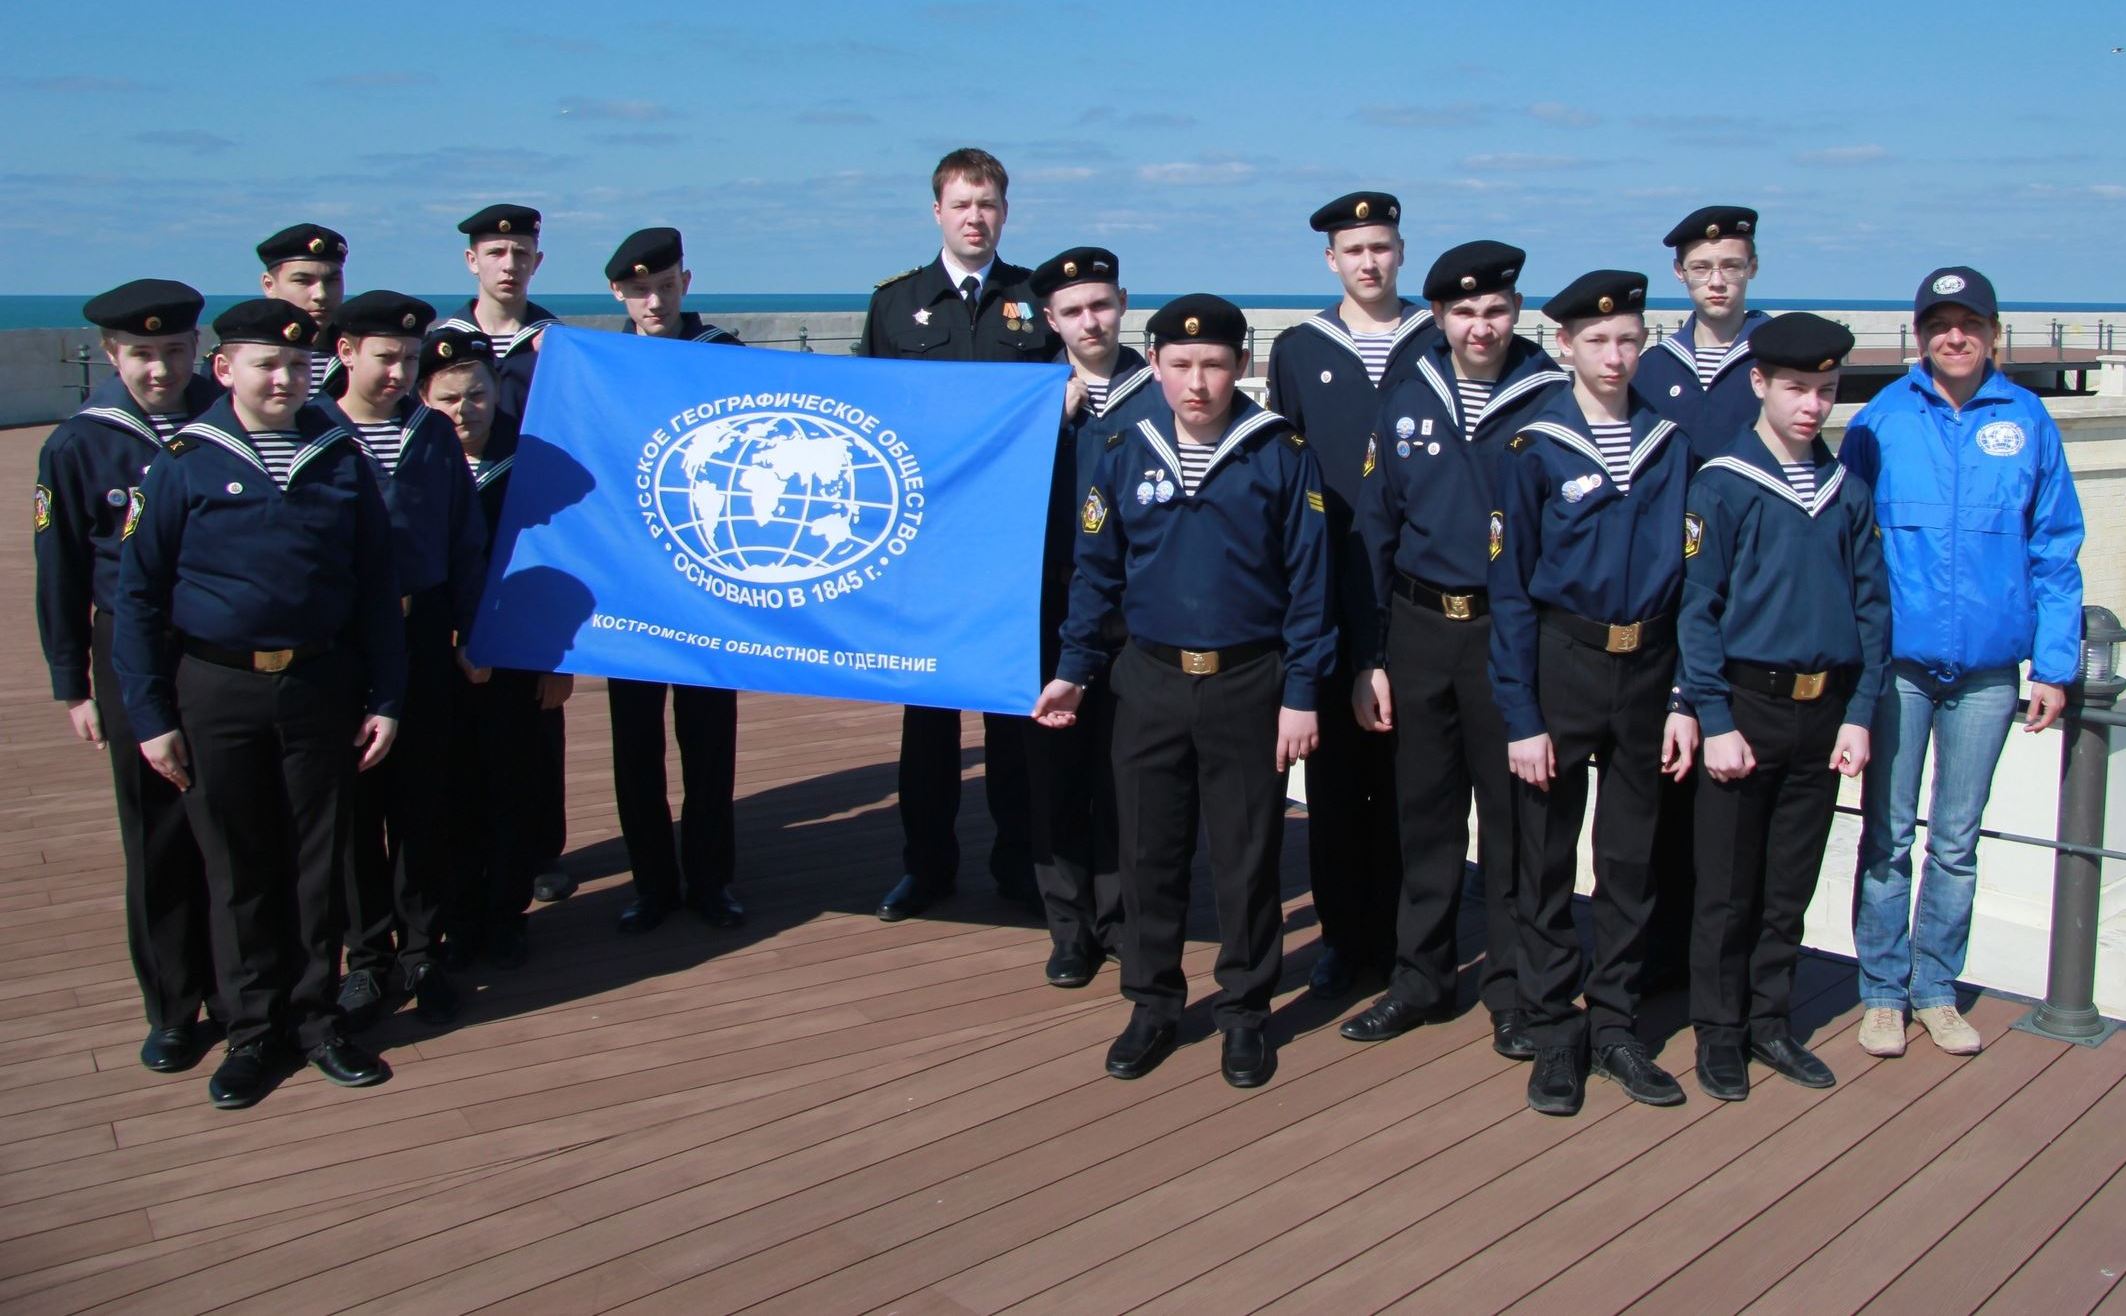 Юные моряки из Костромы вступили в ряды РГО